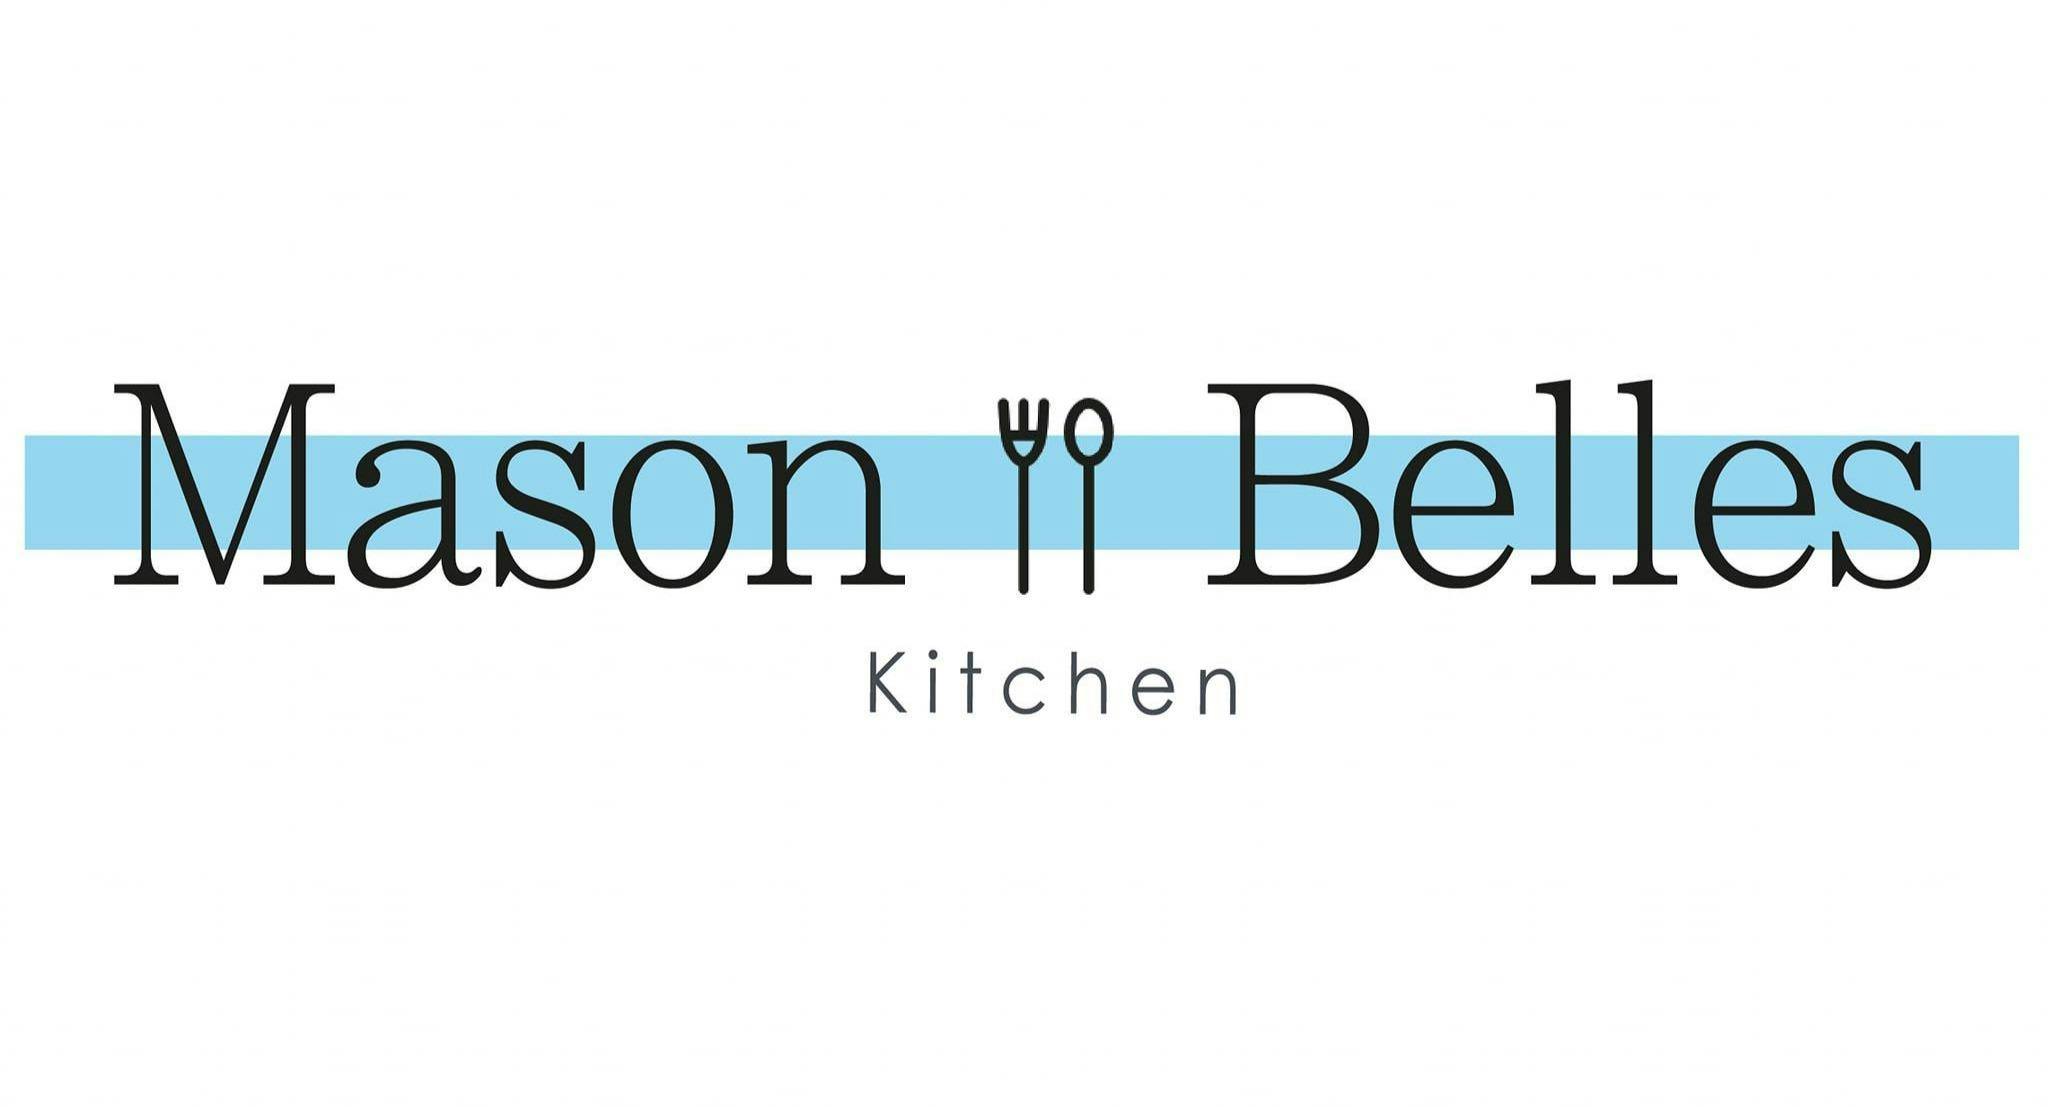 Photo of restaurant Mason Belles Kitchen - Linlithgow in Linlithgow, Linlithgow